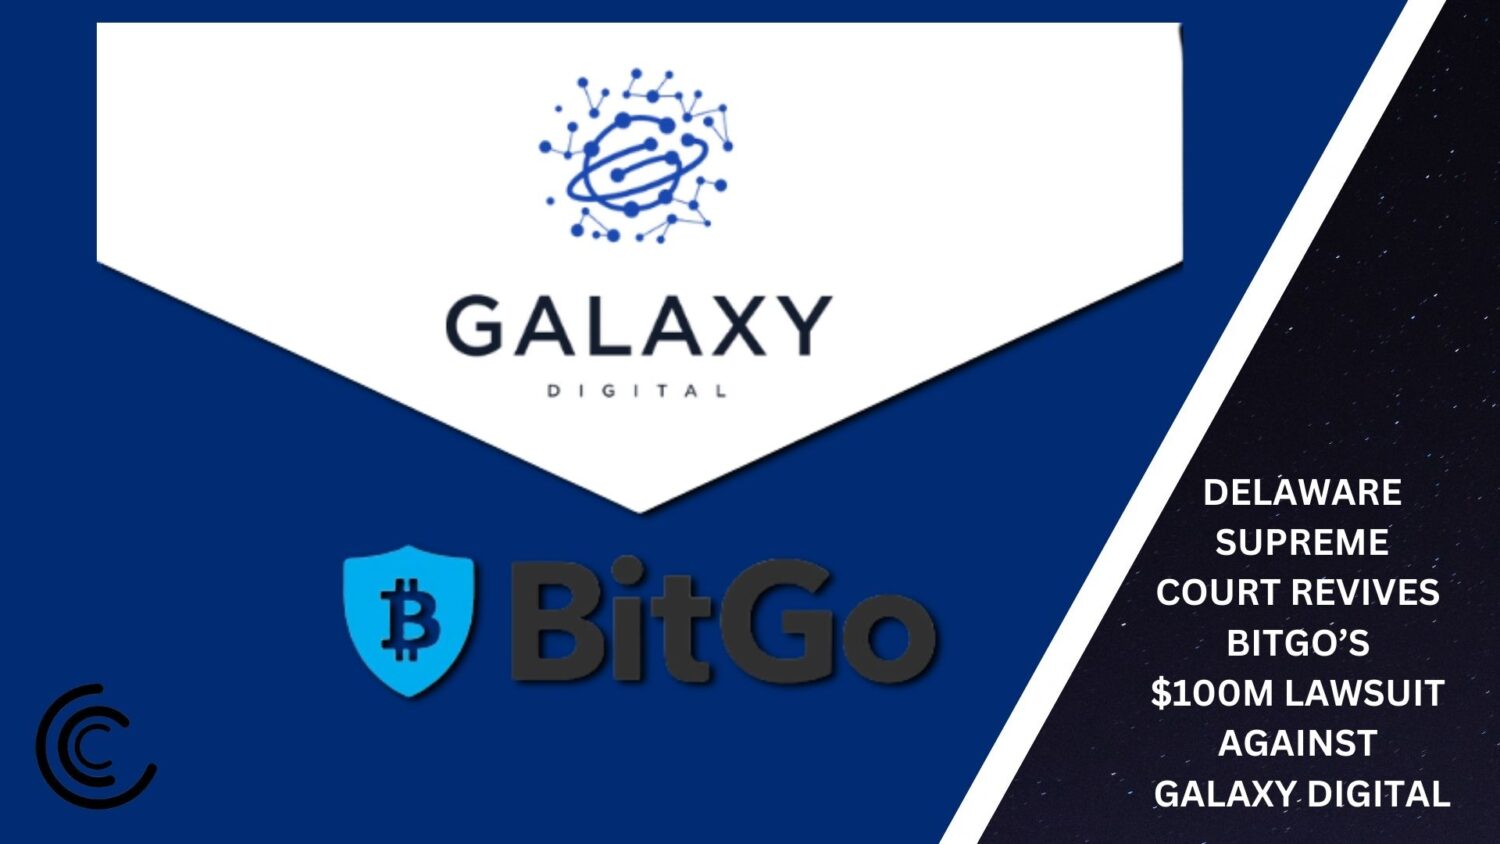 Delaware Supreme Court Revives Bitgo’s $100M Lawsuit Against Galaxy Digital